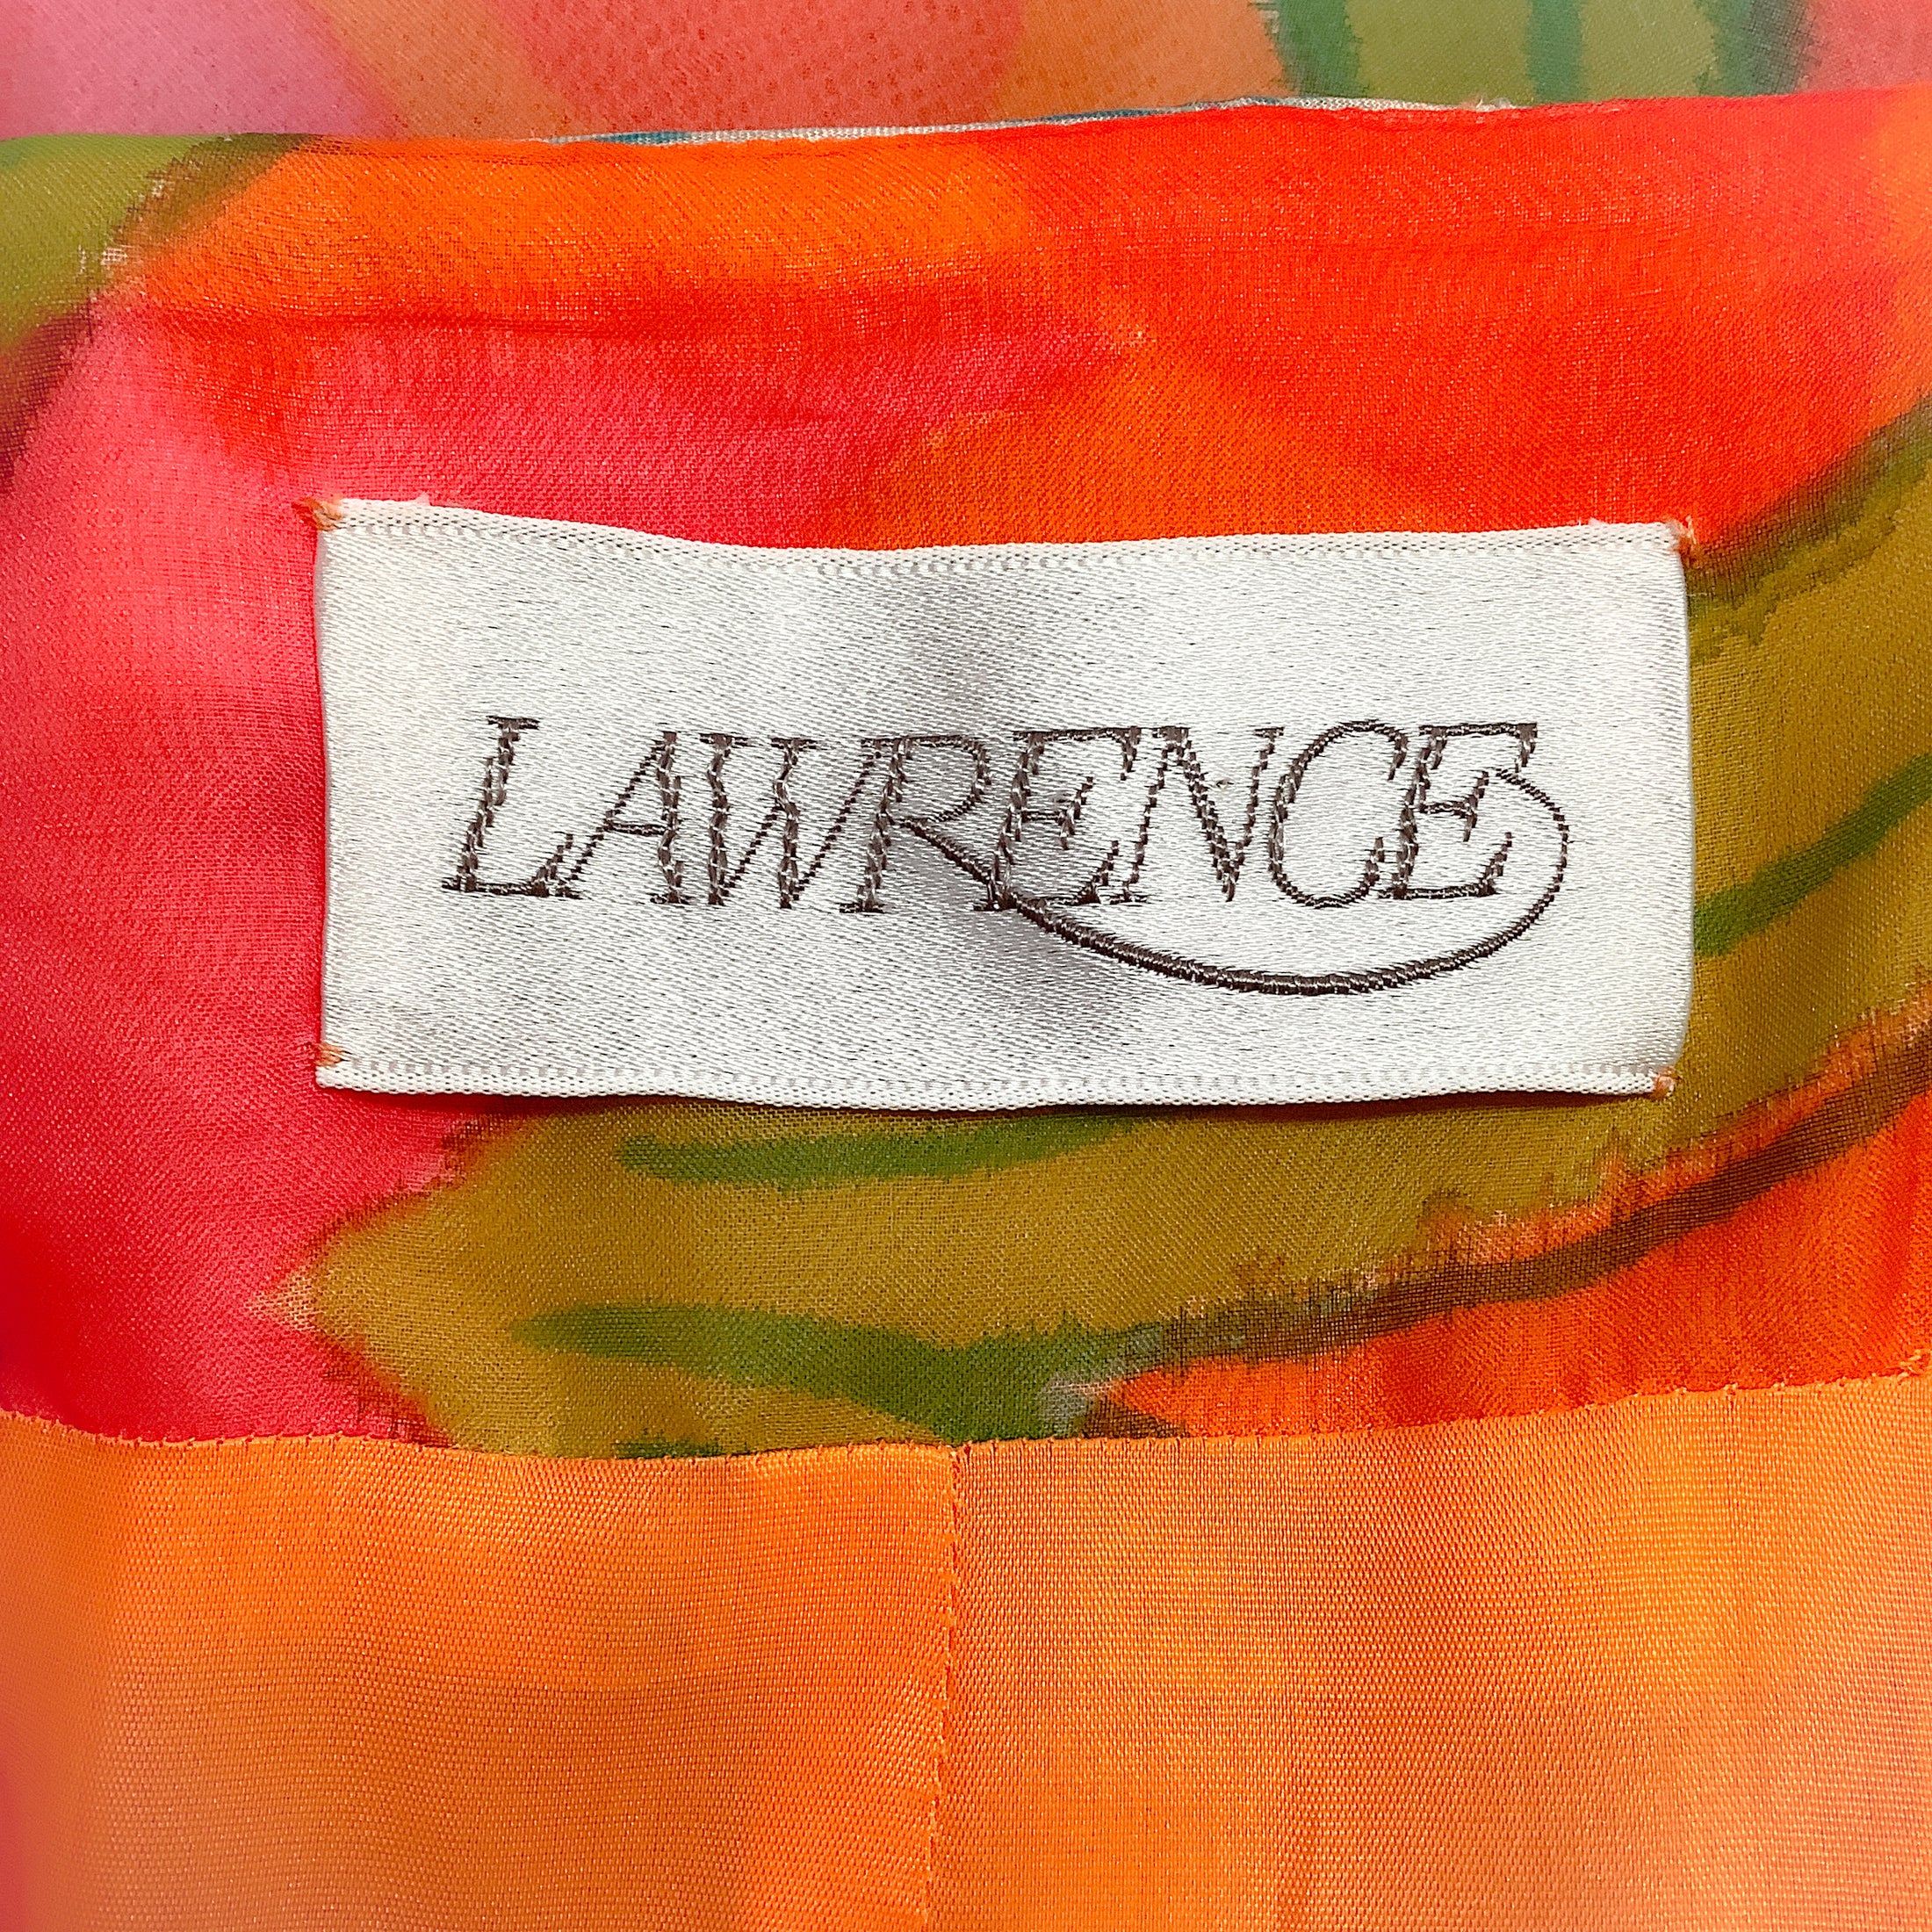 Lawrence Vintage Orange / Pink Multi Floral Strapless Dress